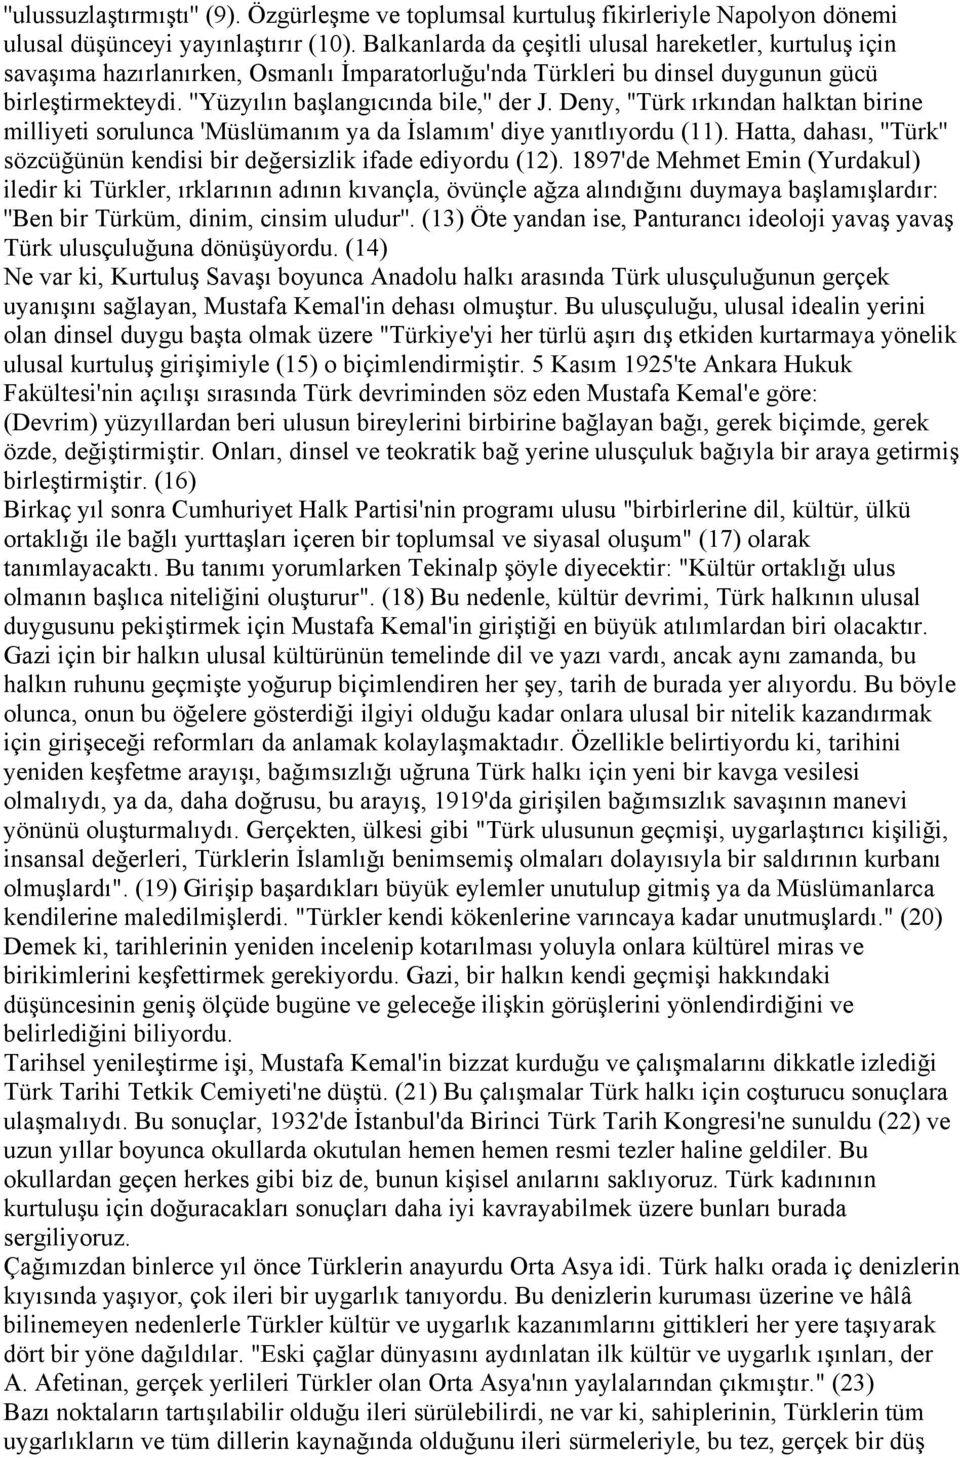 Deny, ''Türk ırkından halktan birine milliyeti sorulunca 'Müslümanım ya da İslamım' diye yanıtlıyordu (11). Hatta, dahası, ''Türk'' sözcüğünün kendisi bir değersizlik ifade ediyordu (12).